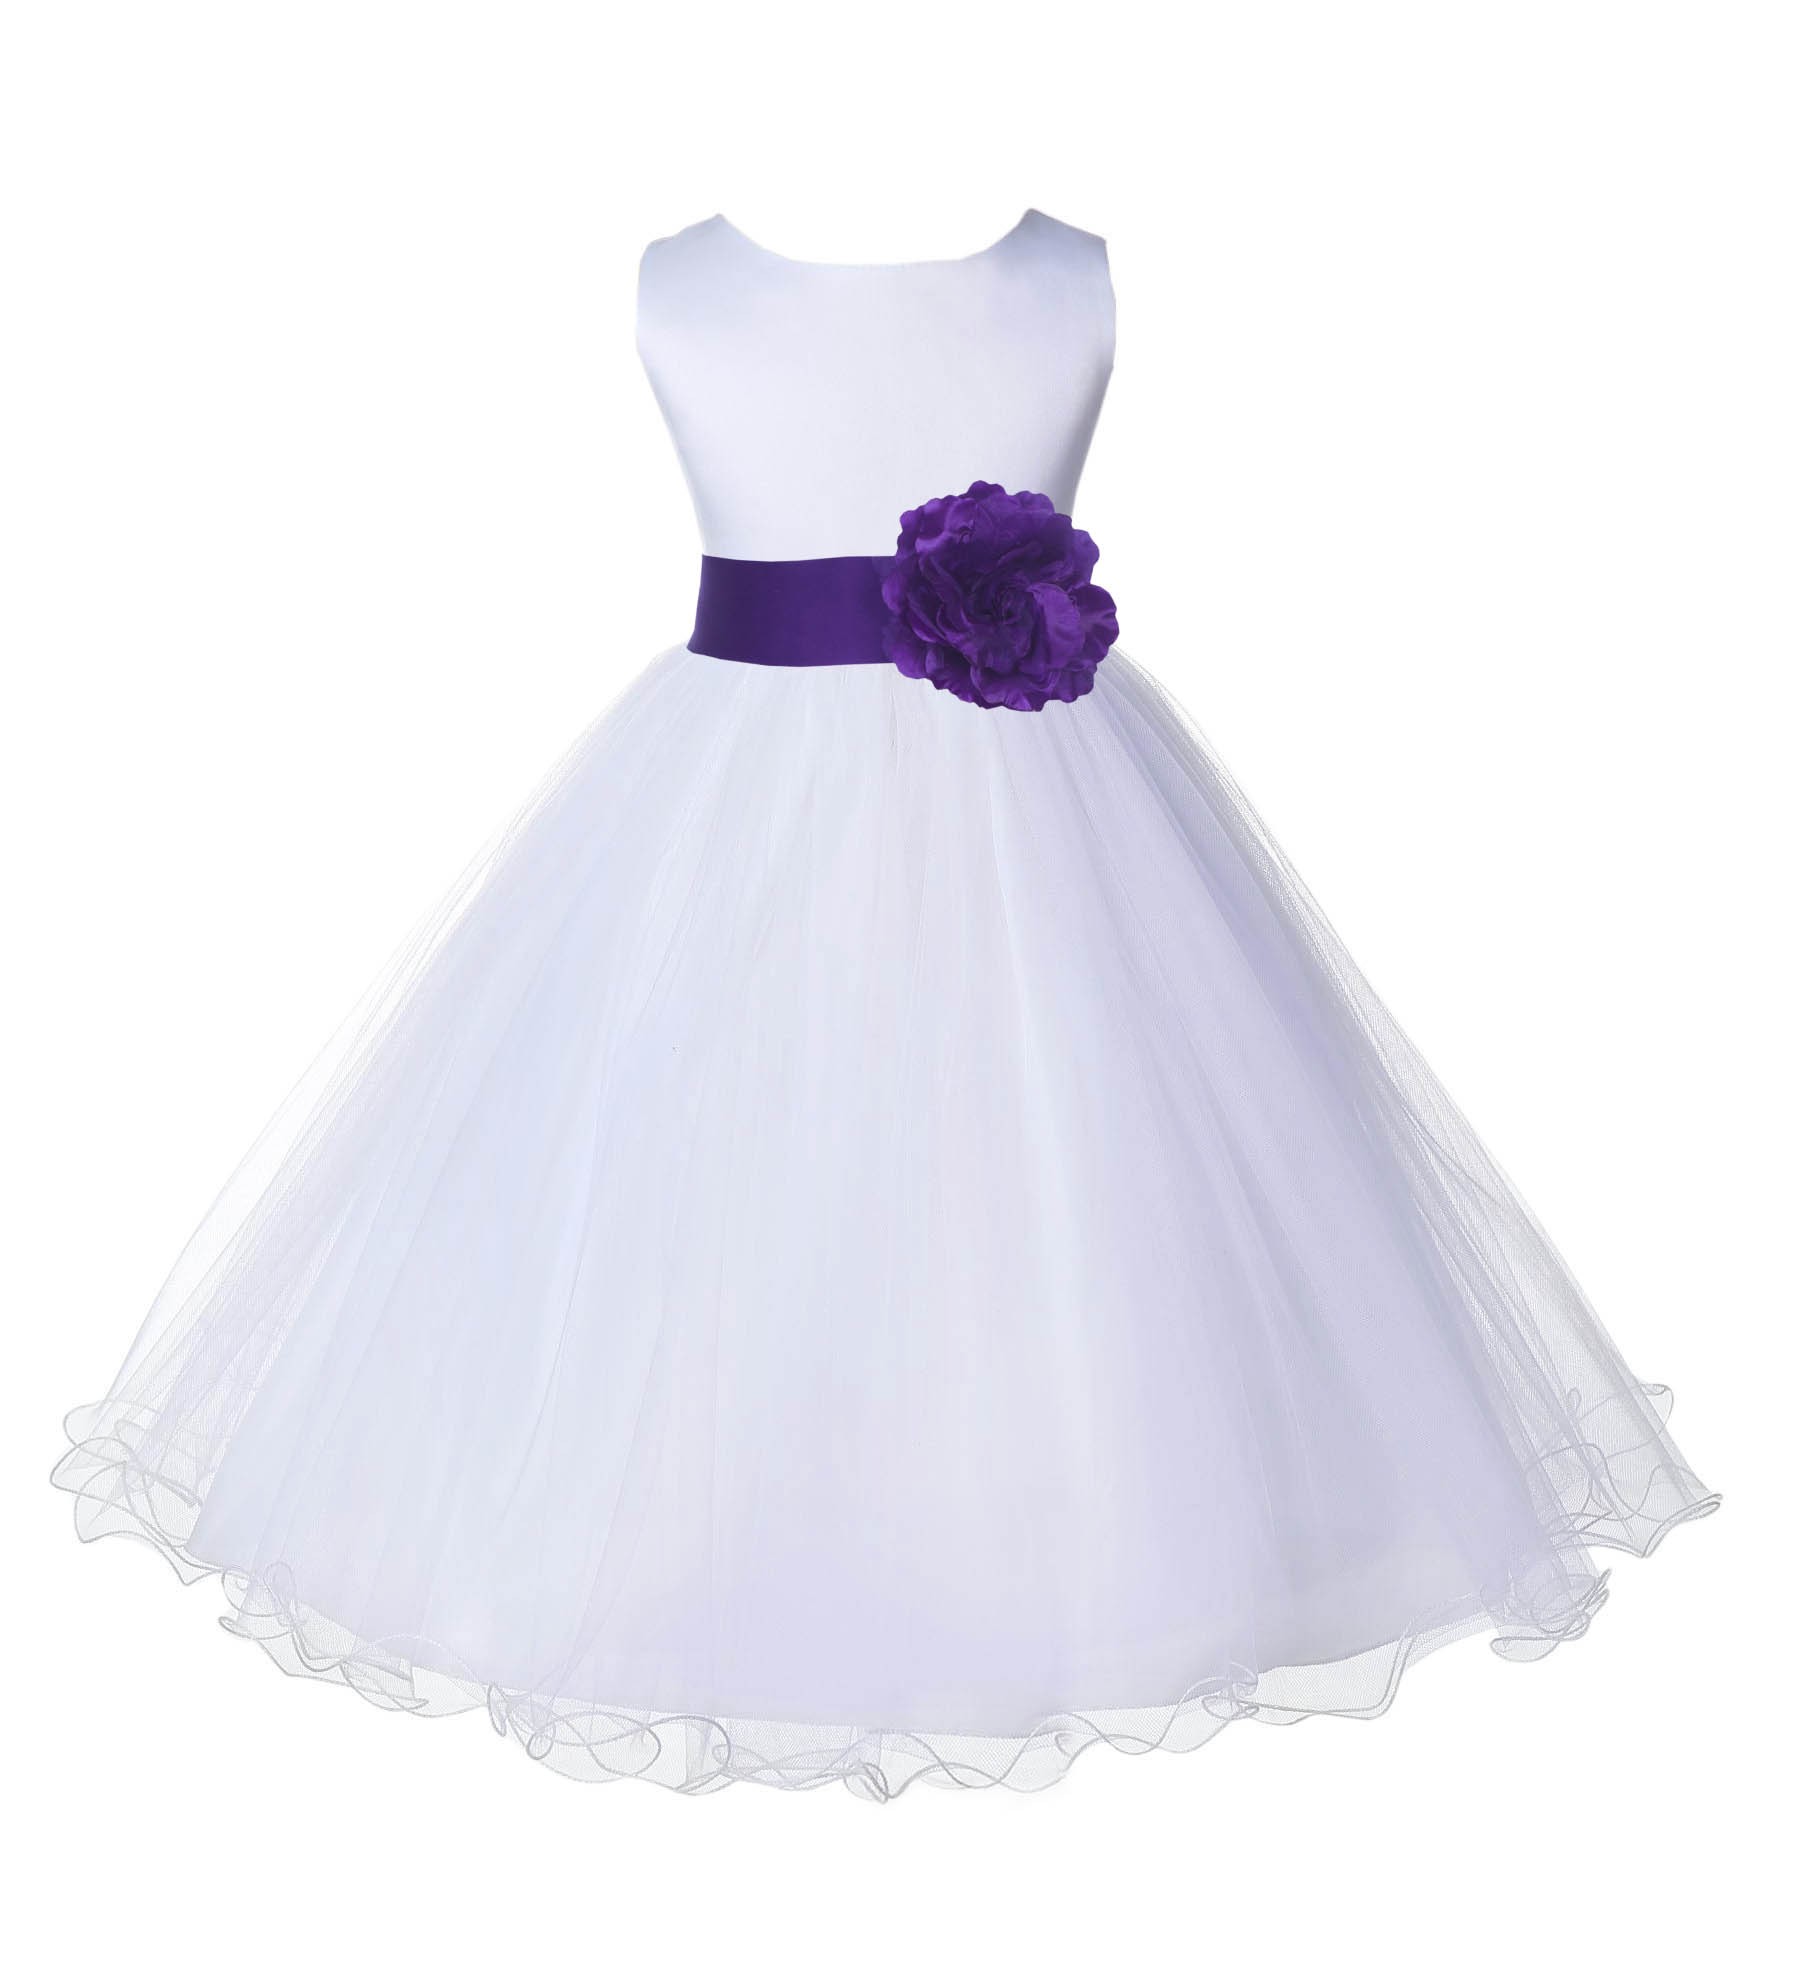 White/Cadbury Tulle Rattail Edge Flower Girl Dress Wedding Bridal 829S